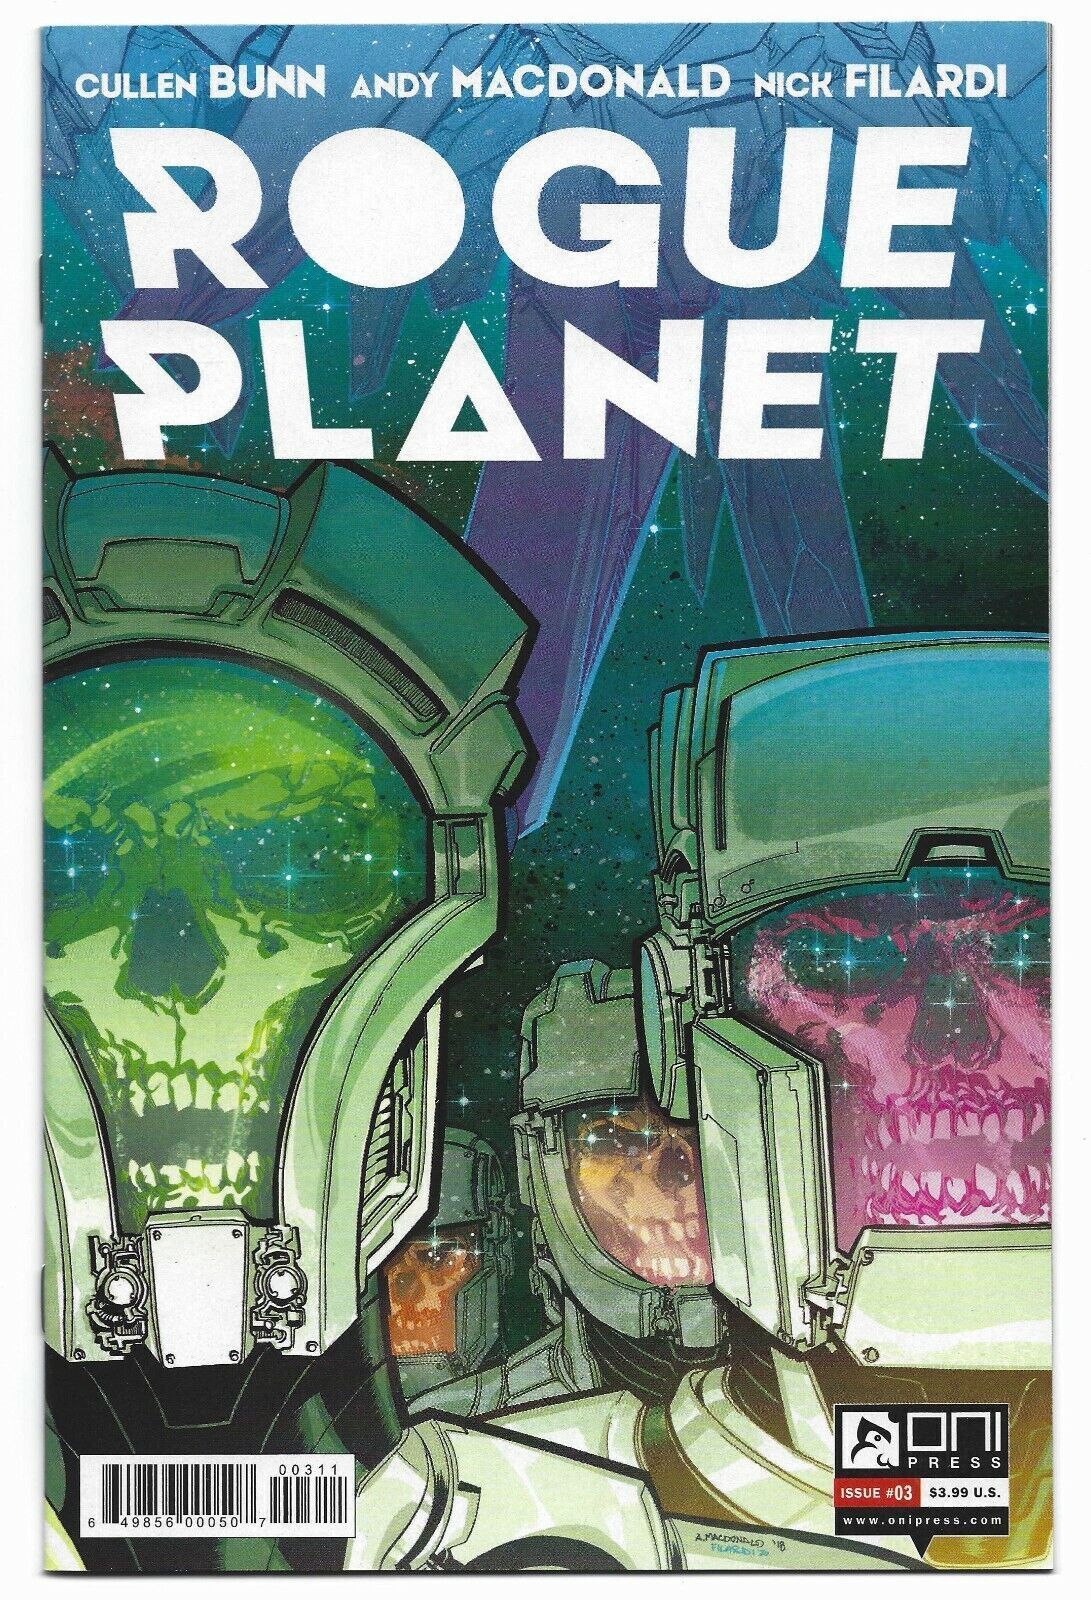 Rogue Planet #3 2020 Unread Andy MacDonald Cover Oni Press Comics Cullen Bunn